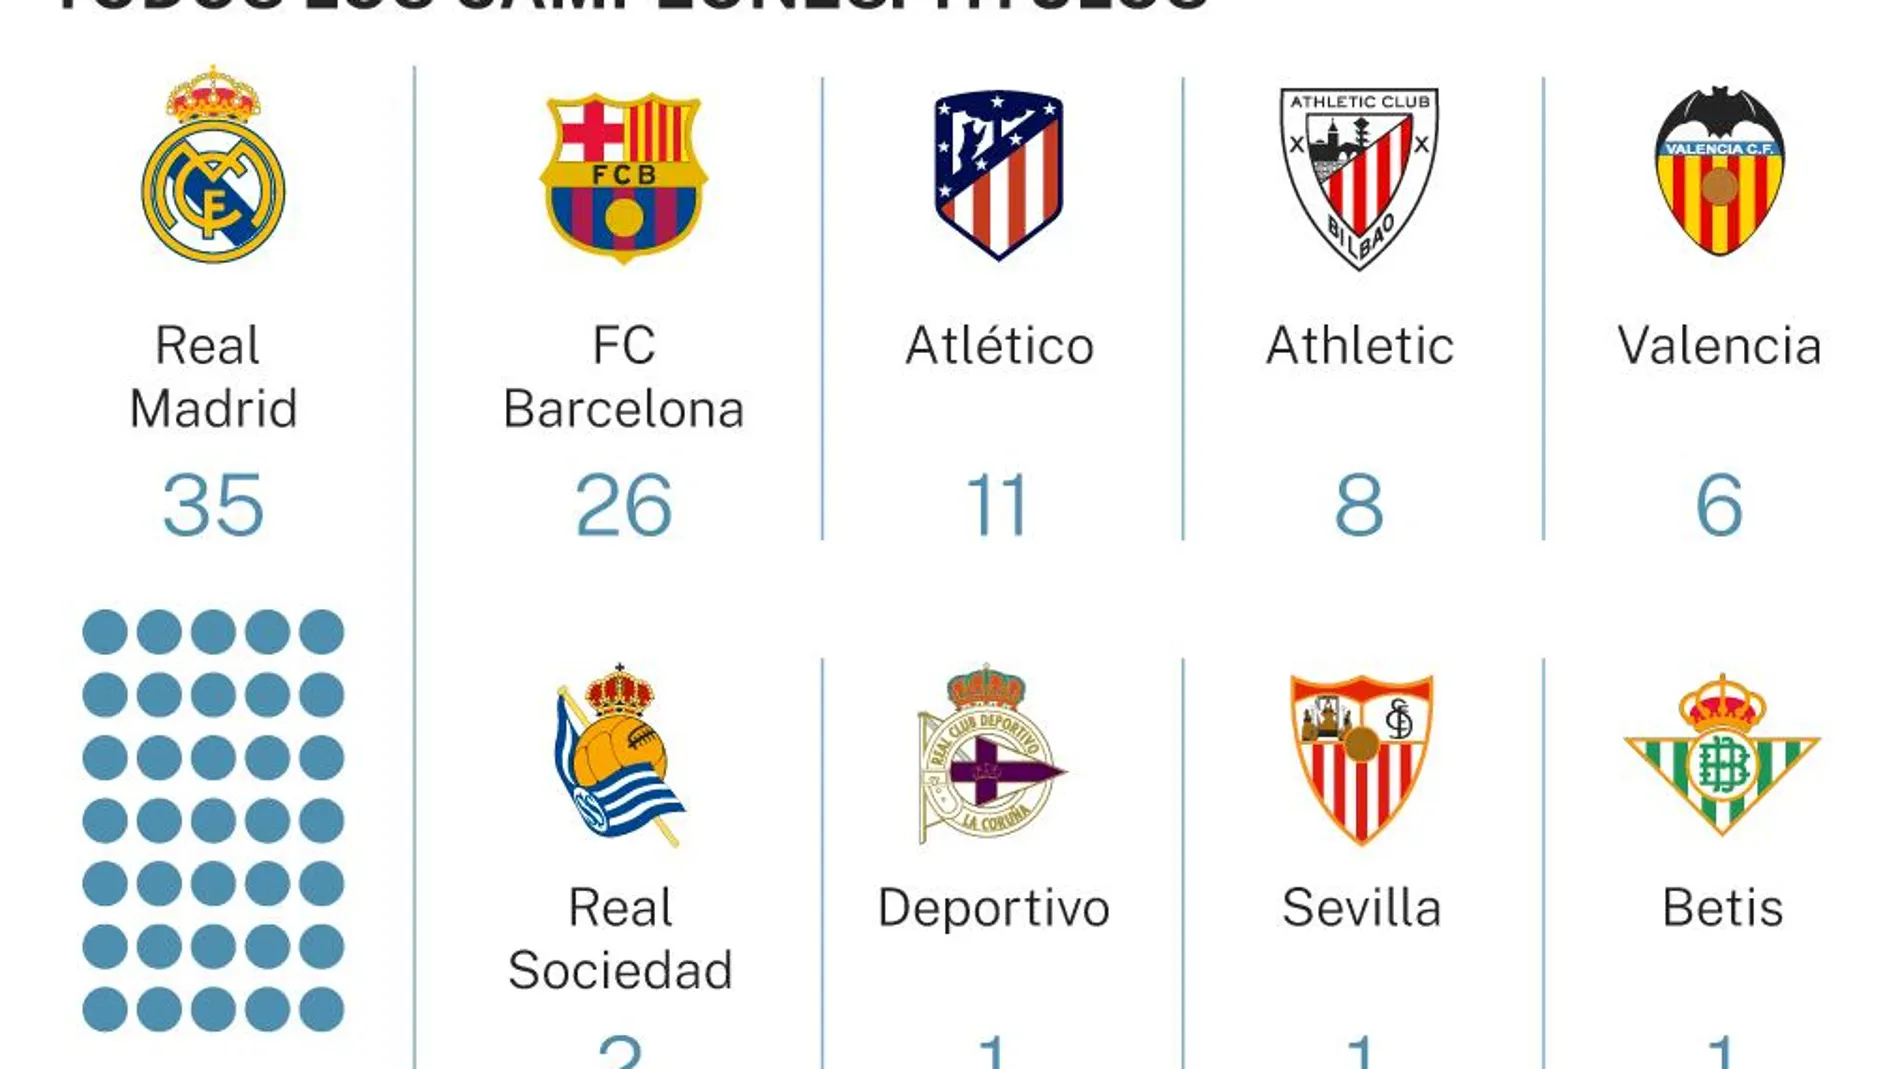 Cuántas ligas de fútbol tiene el barcelona